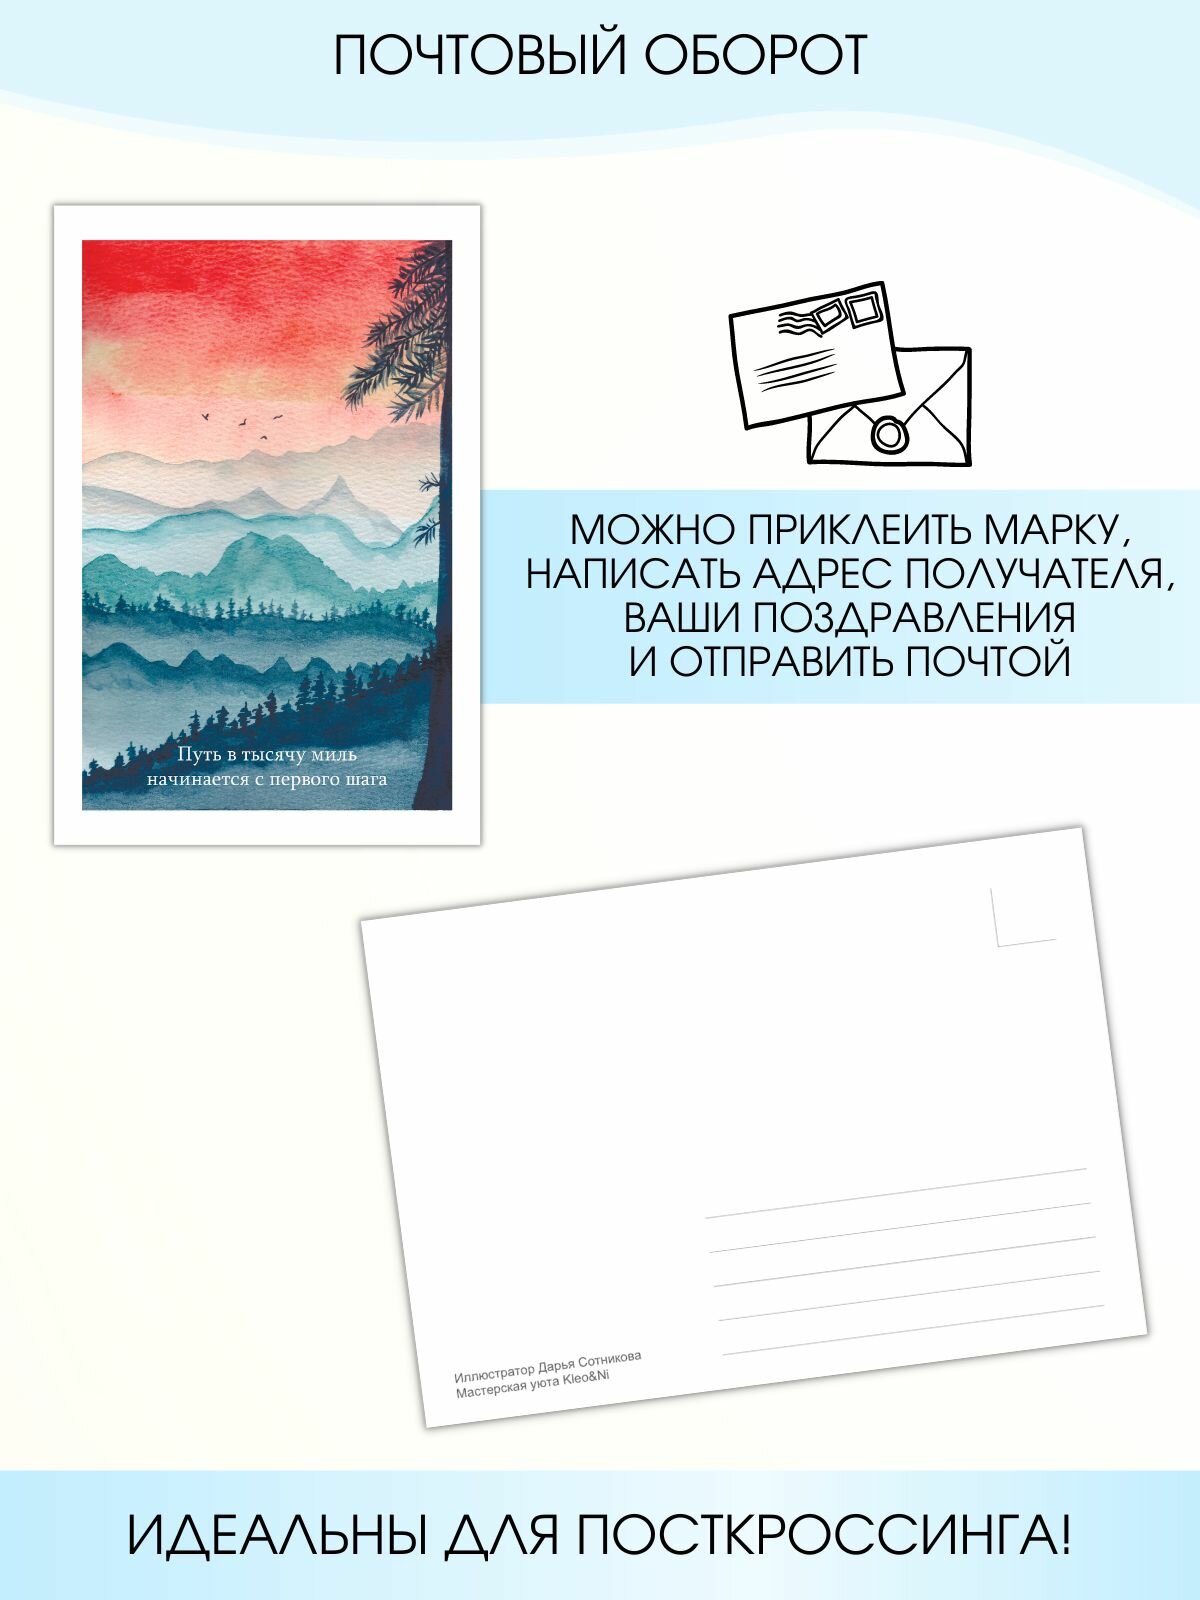 Набор почтовых открыток "Мотивация" от Kleo∋, 6 штук